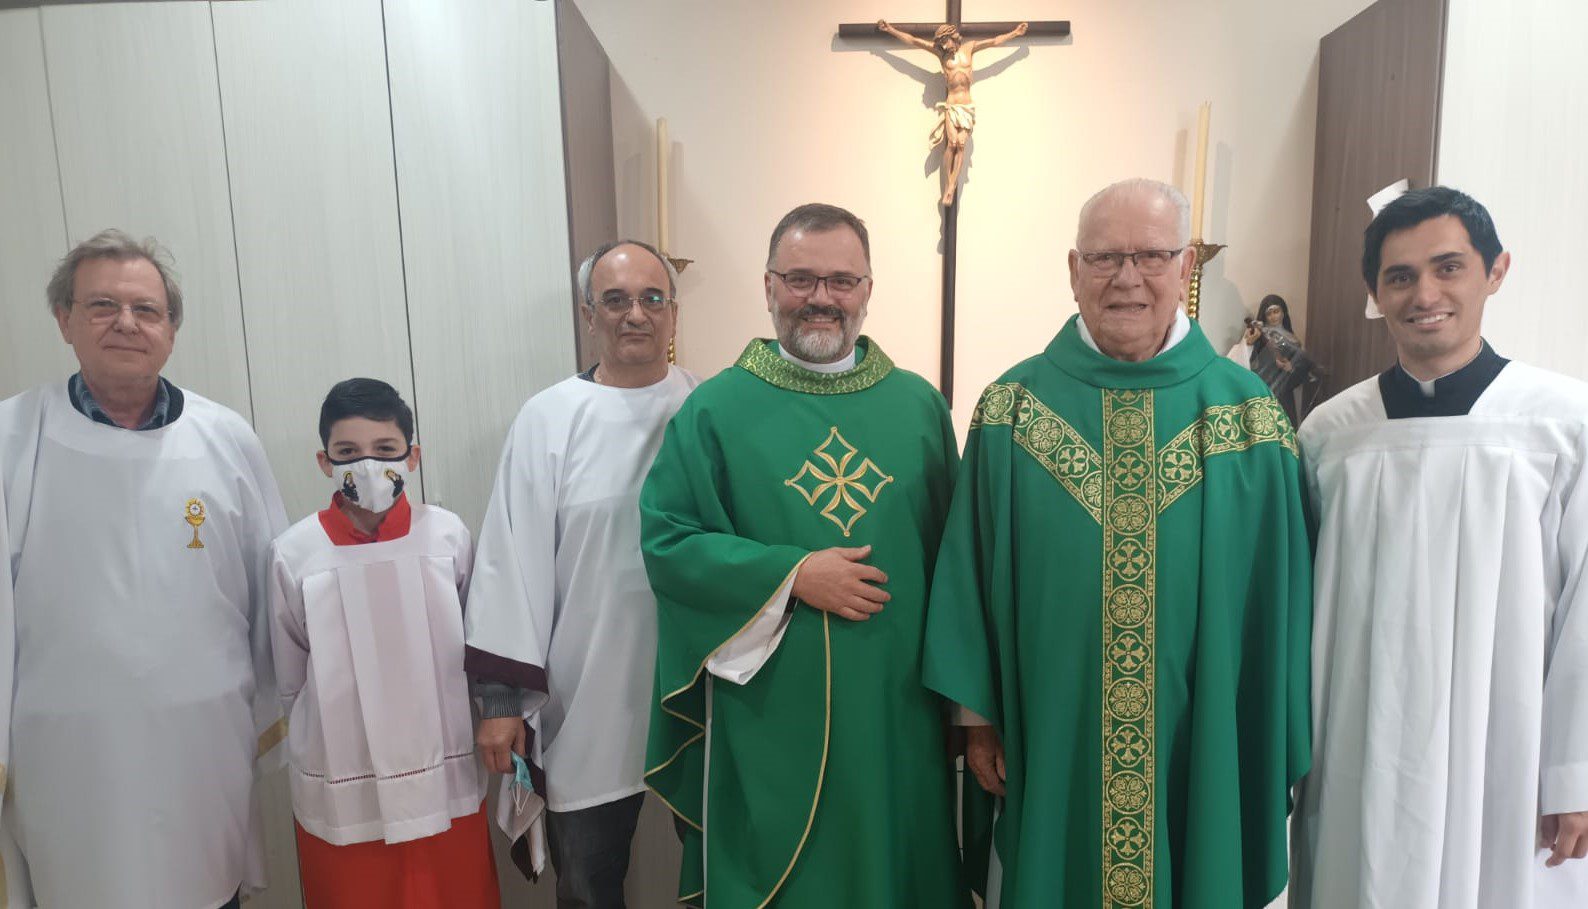 Padre residente em Gravataí celebra 65 anos de ordenação presbiteral